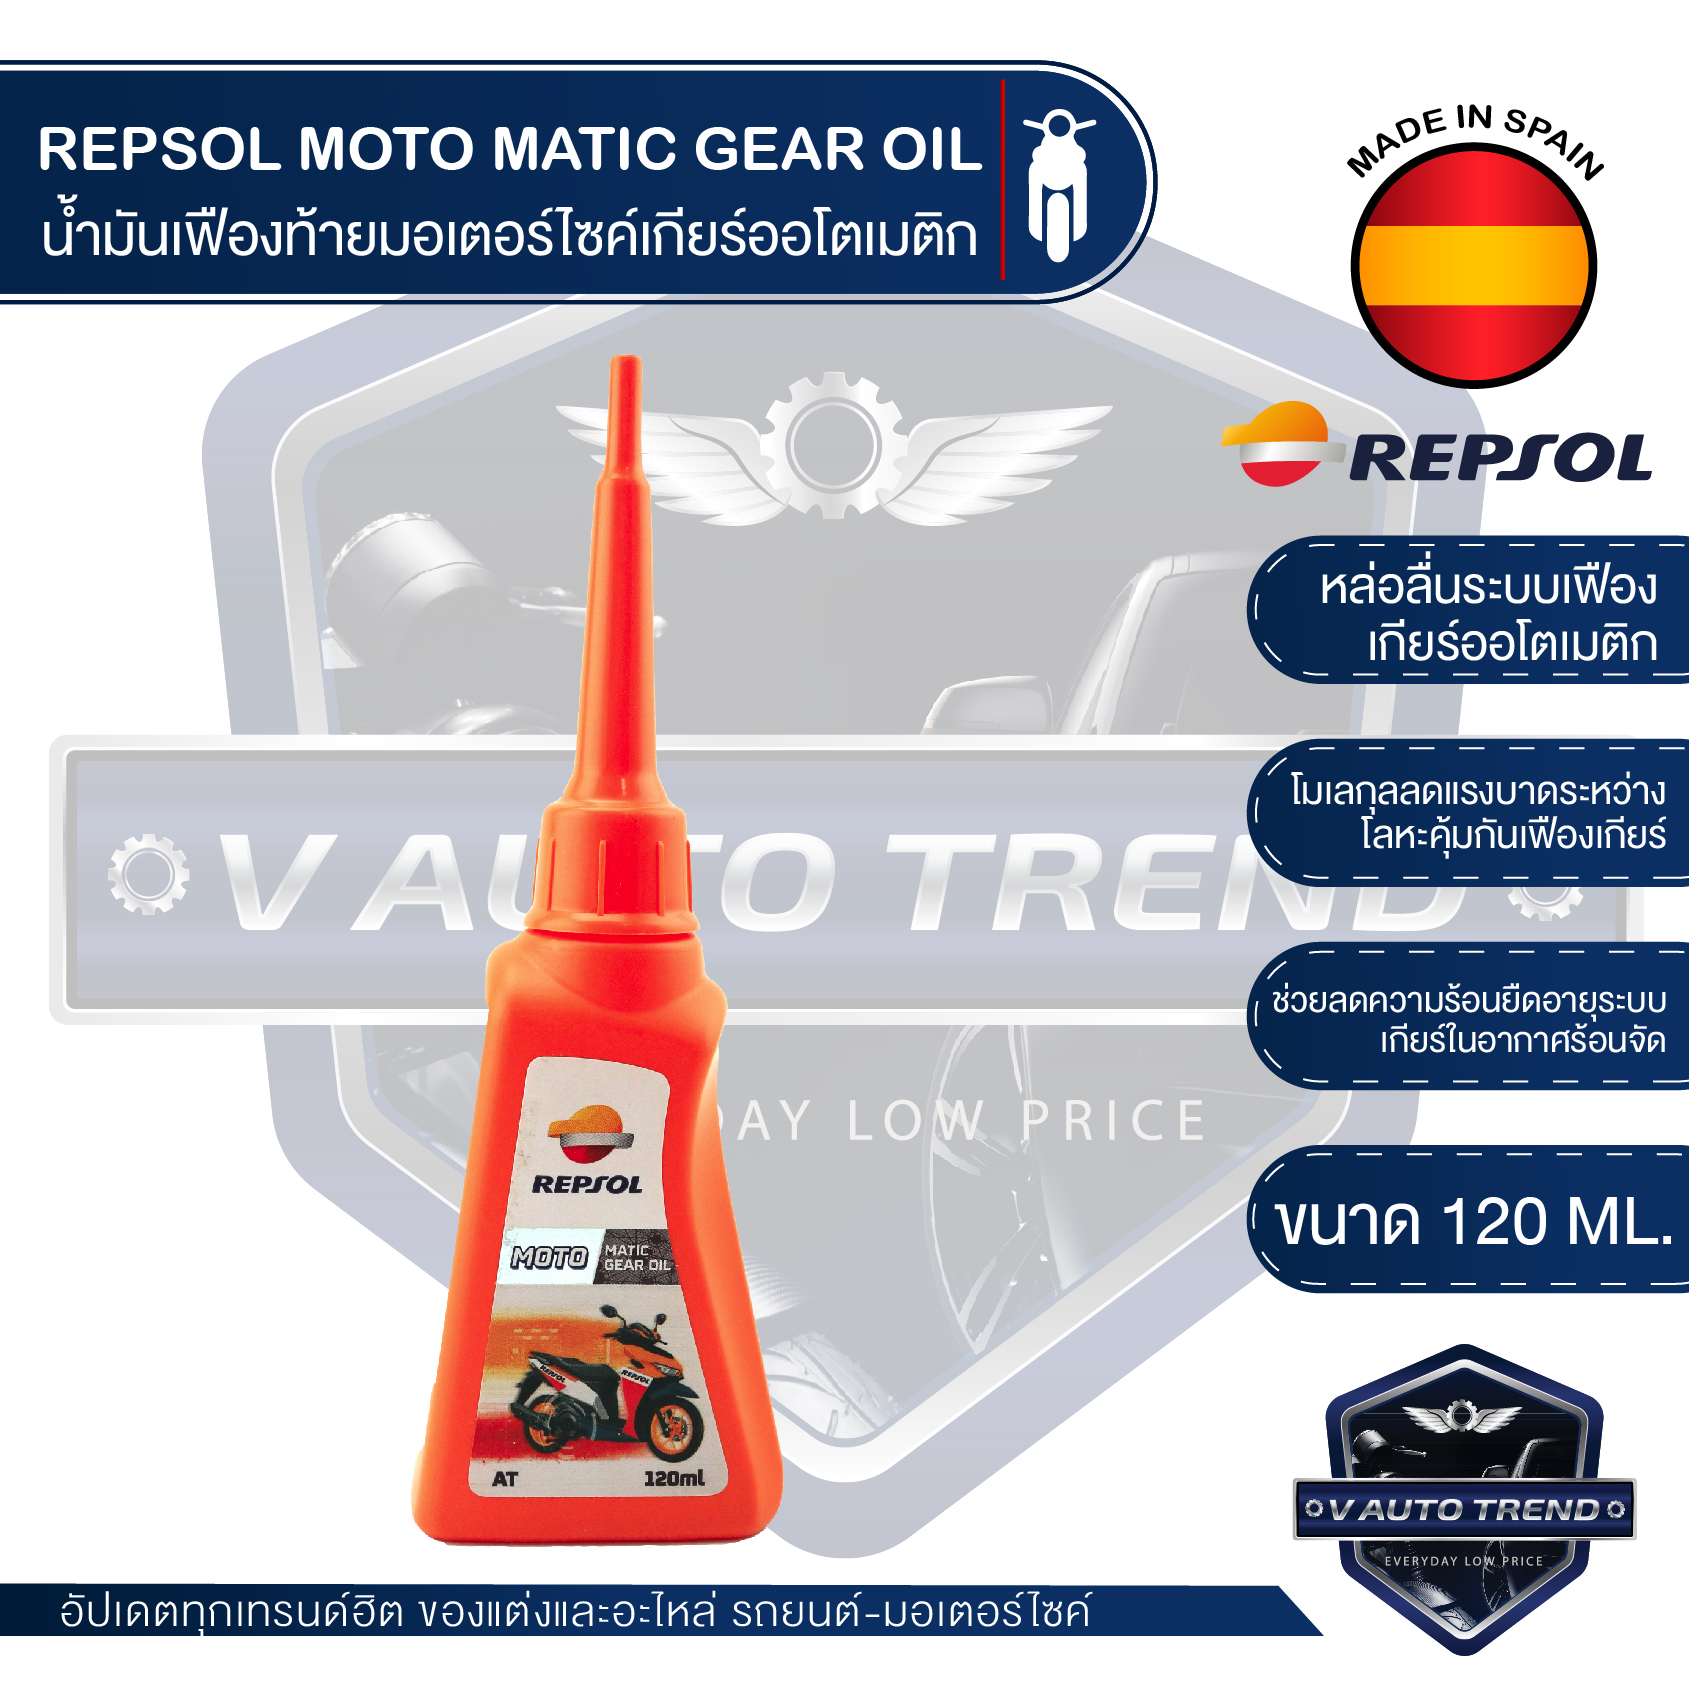 REPSOL Moto Matic Gear Oil ขนาด 120 ML. น้ำมันเฟืองท้ายเกียร์ รถมอเตอร์ไซค์ออโตเมติก สายพาน  แบรนด์น้ำมันเครื่องอันดับ 1 จากประเทศสเปน